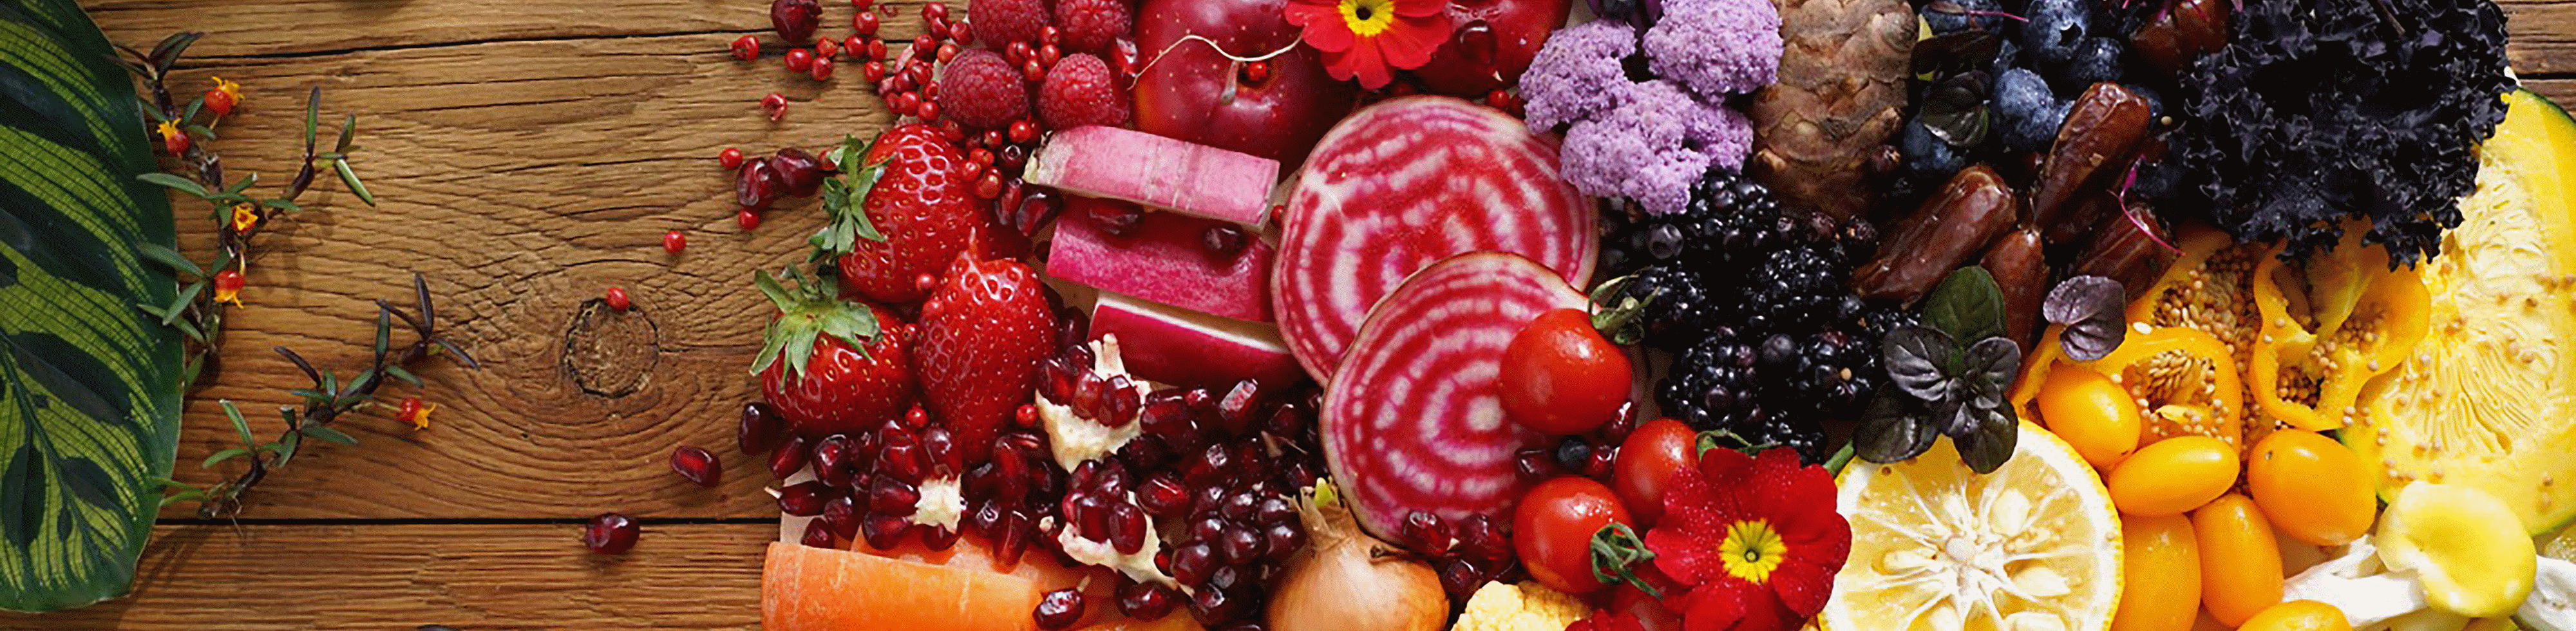 Mit diesem Objektiv aufgenommenes Bild von farbenfrohem Gemüse und bunten Früchten, bis zum Bildrand hochauflösend